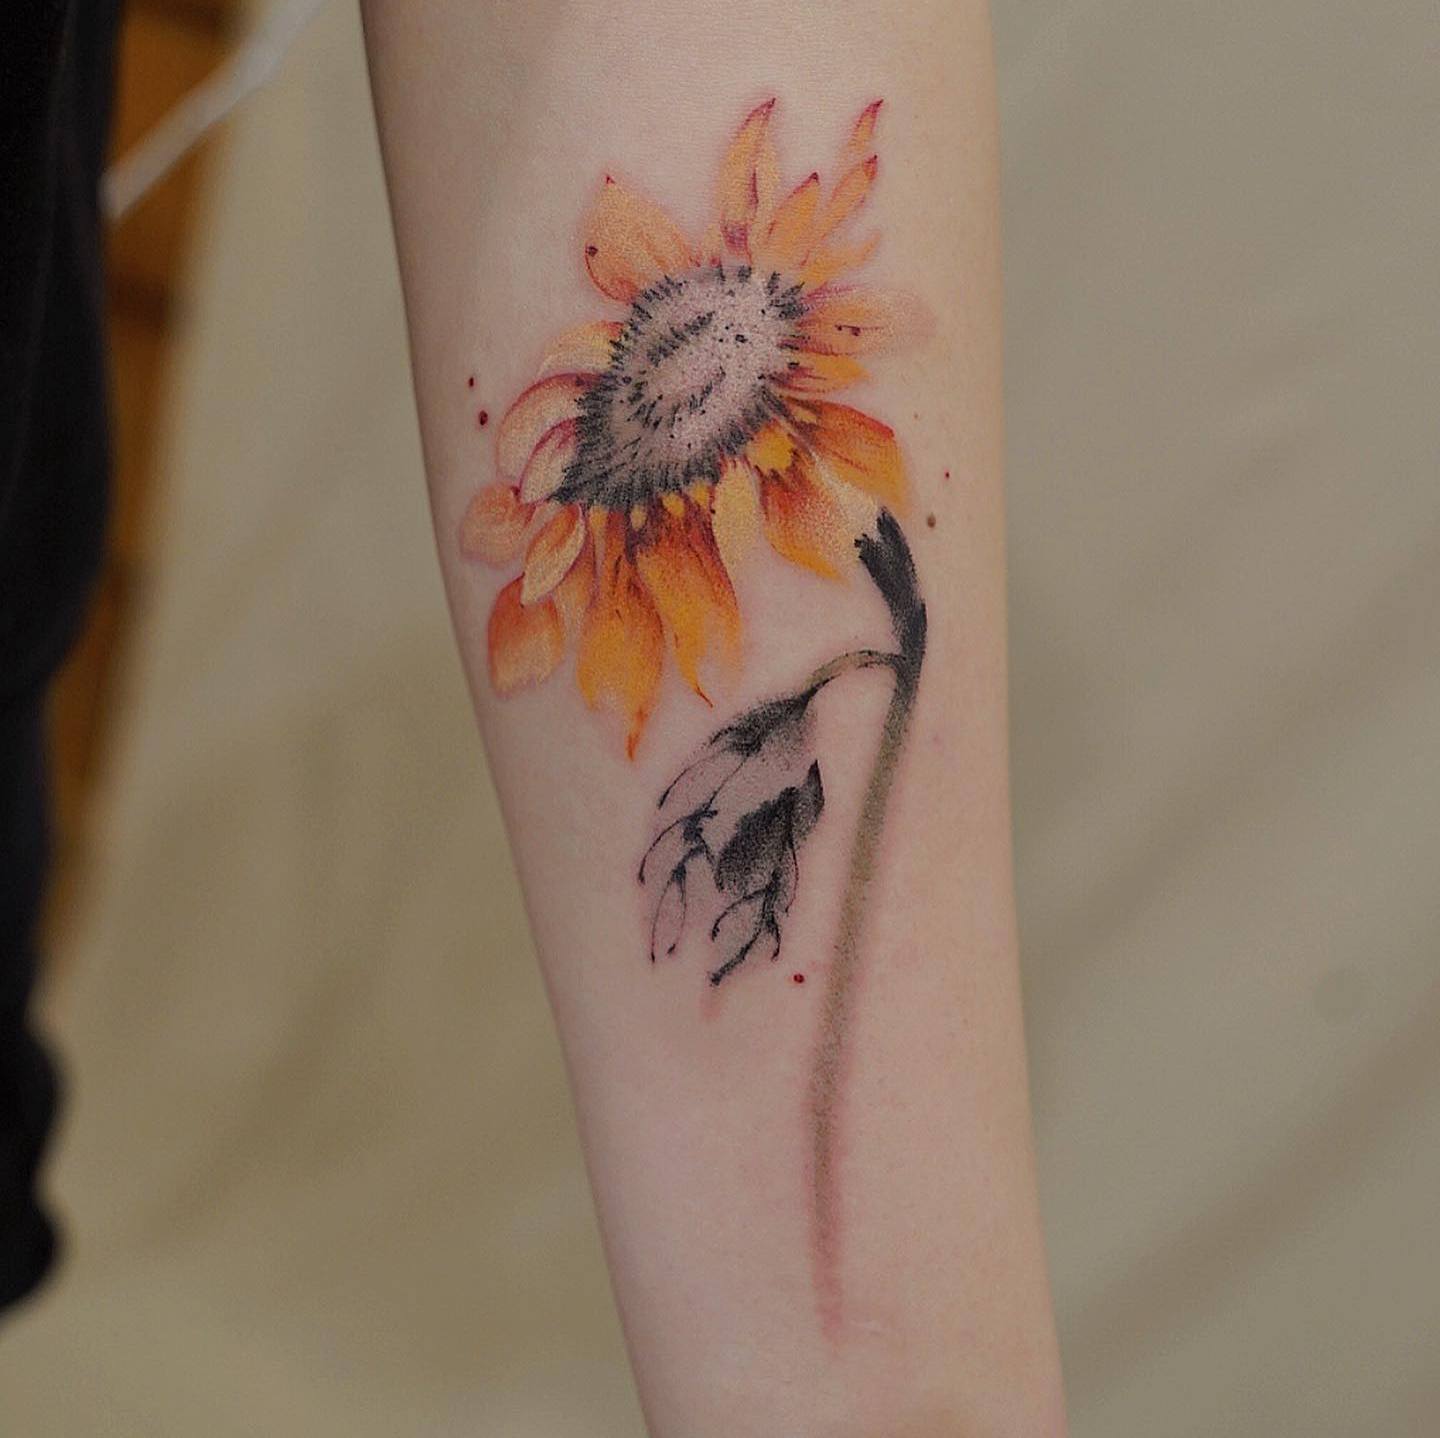 Akwarelowy tatuaż przedstawiający słonecznik z wyblakłymi pomarańczowymi płatkami i czarną rufą